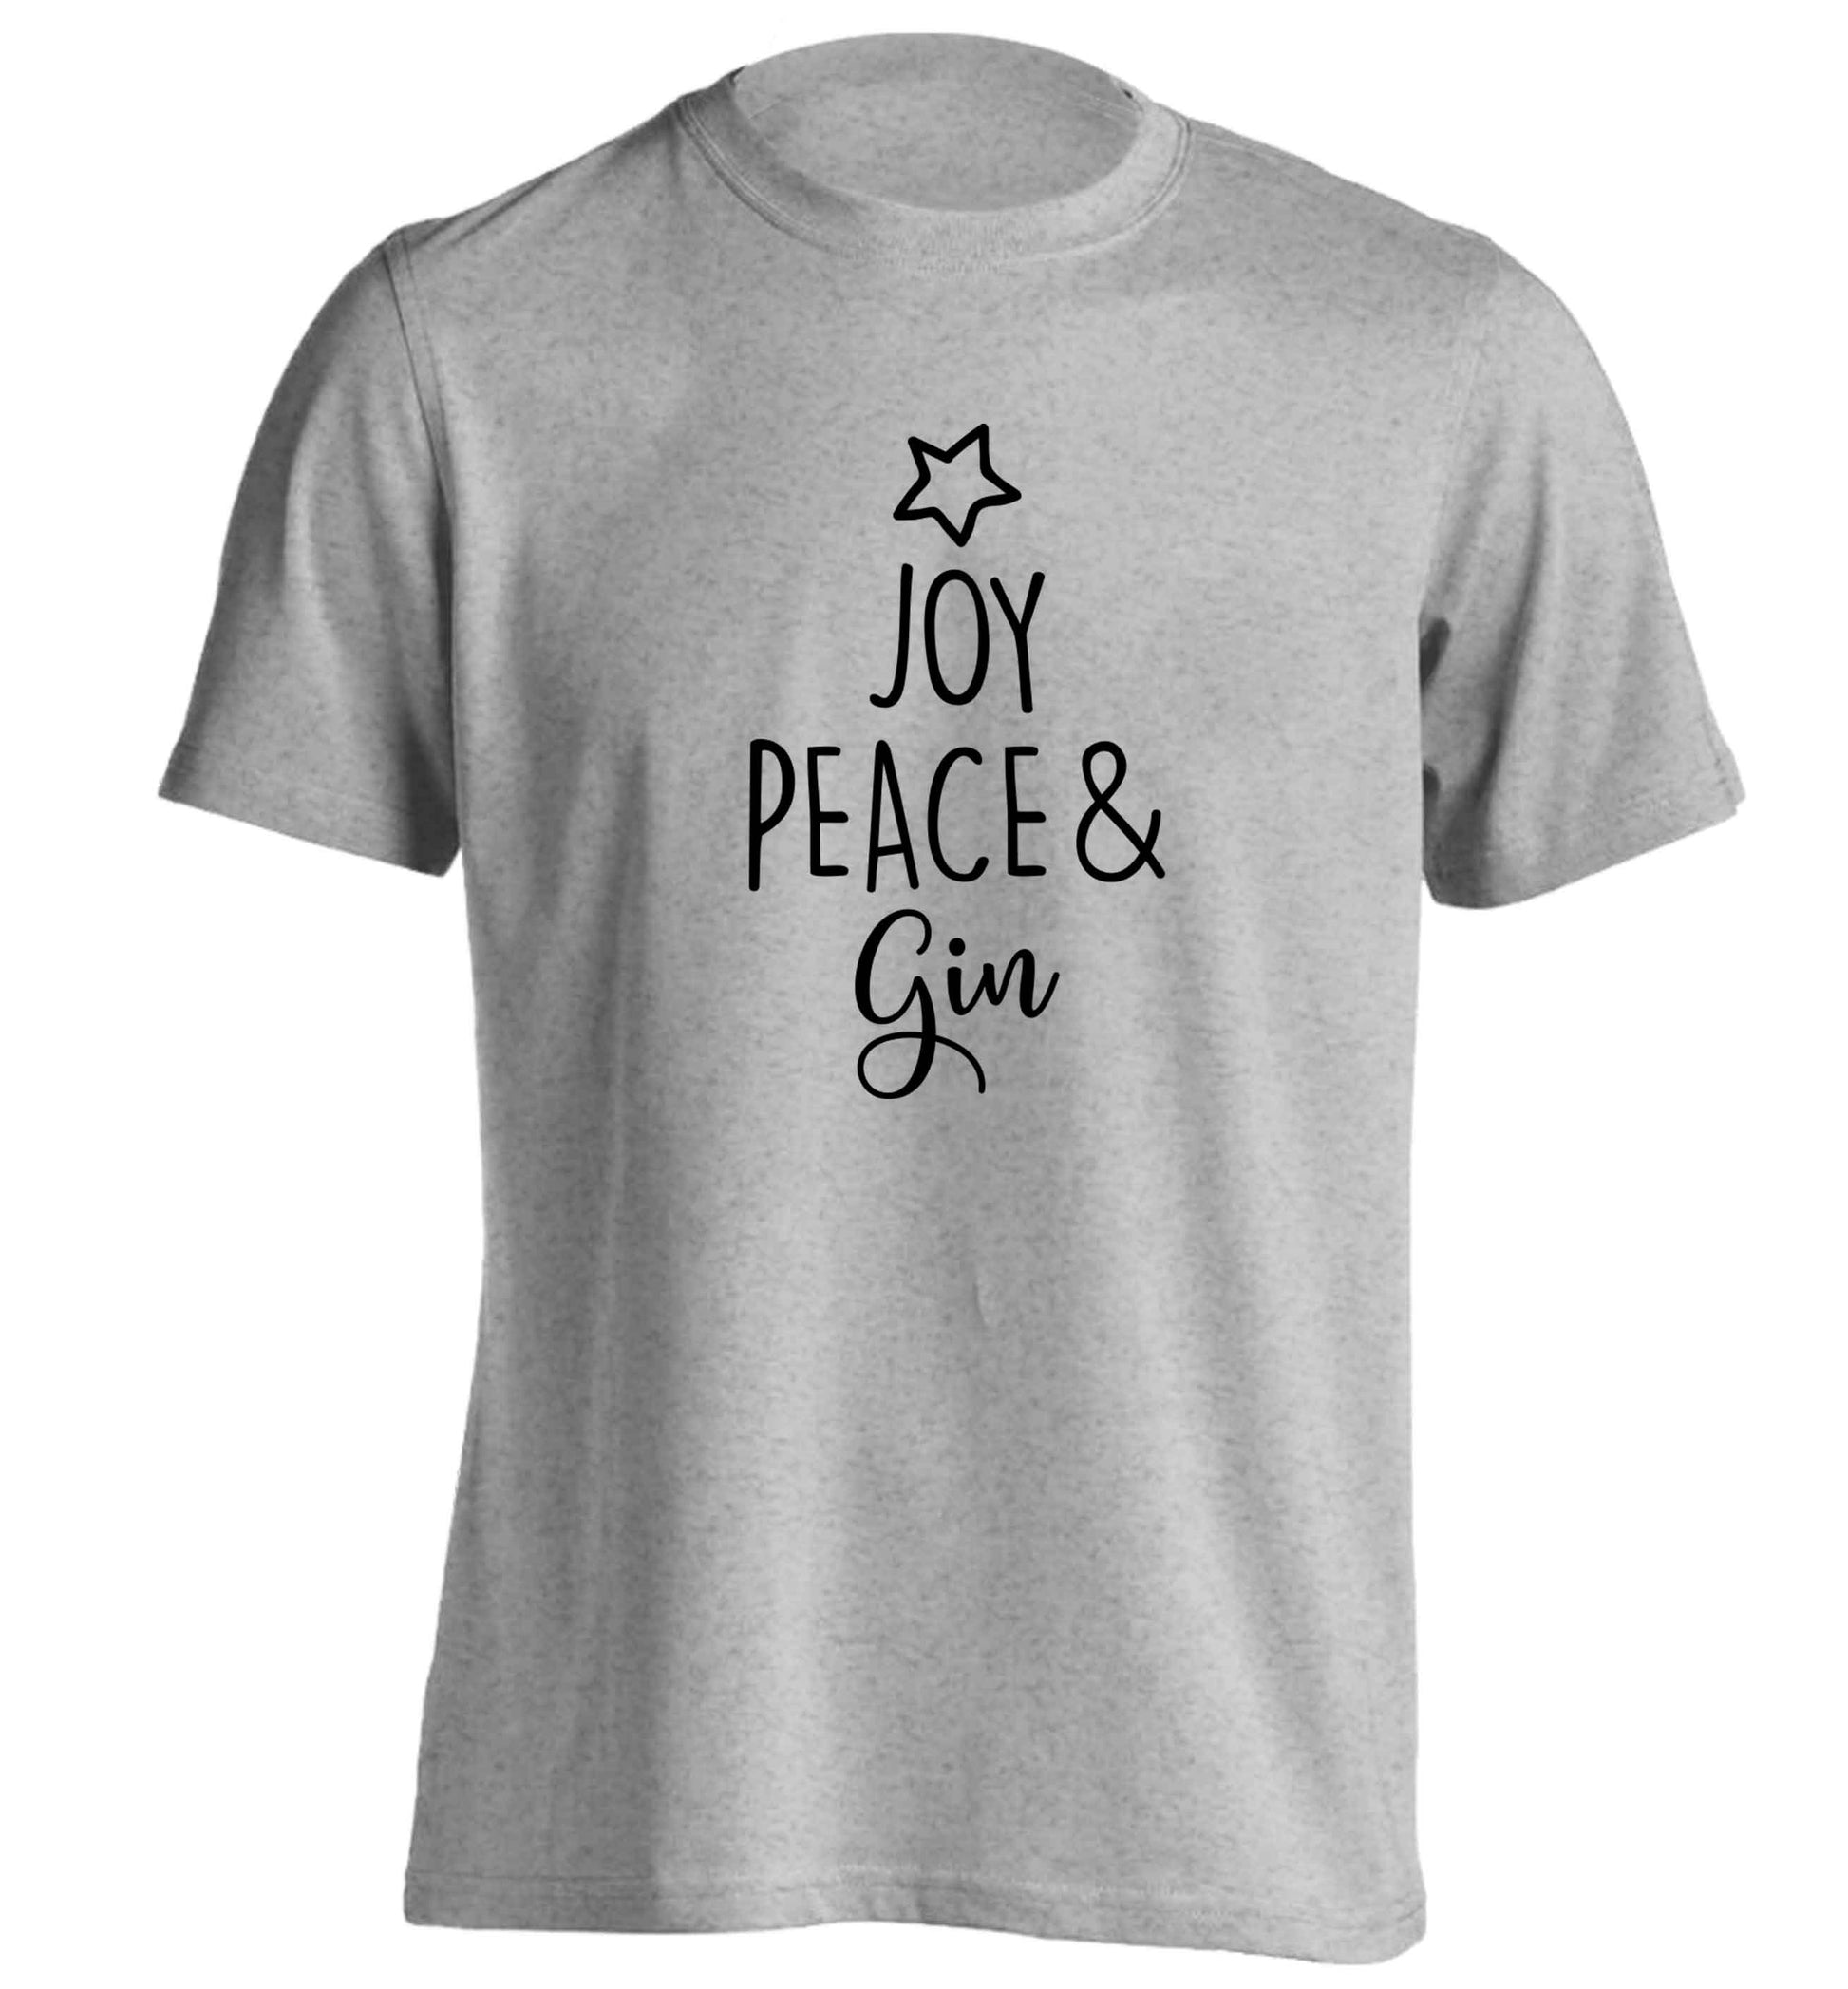 Joy peace and gin adults unisex grey Tshirt 2XL